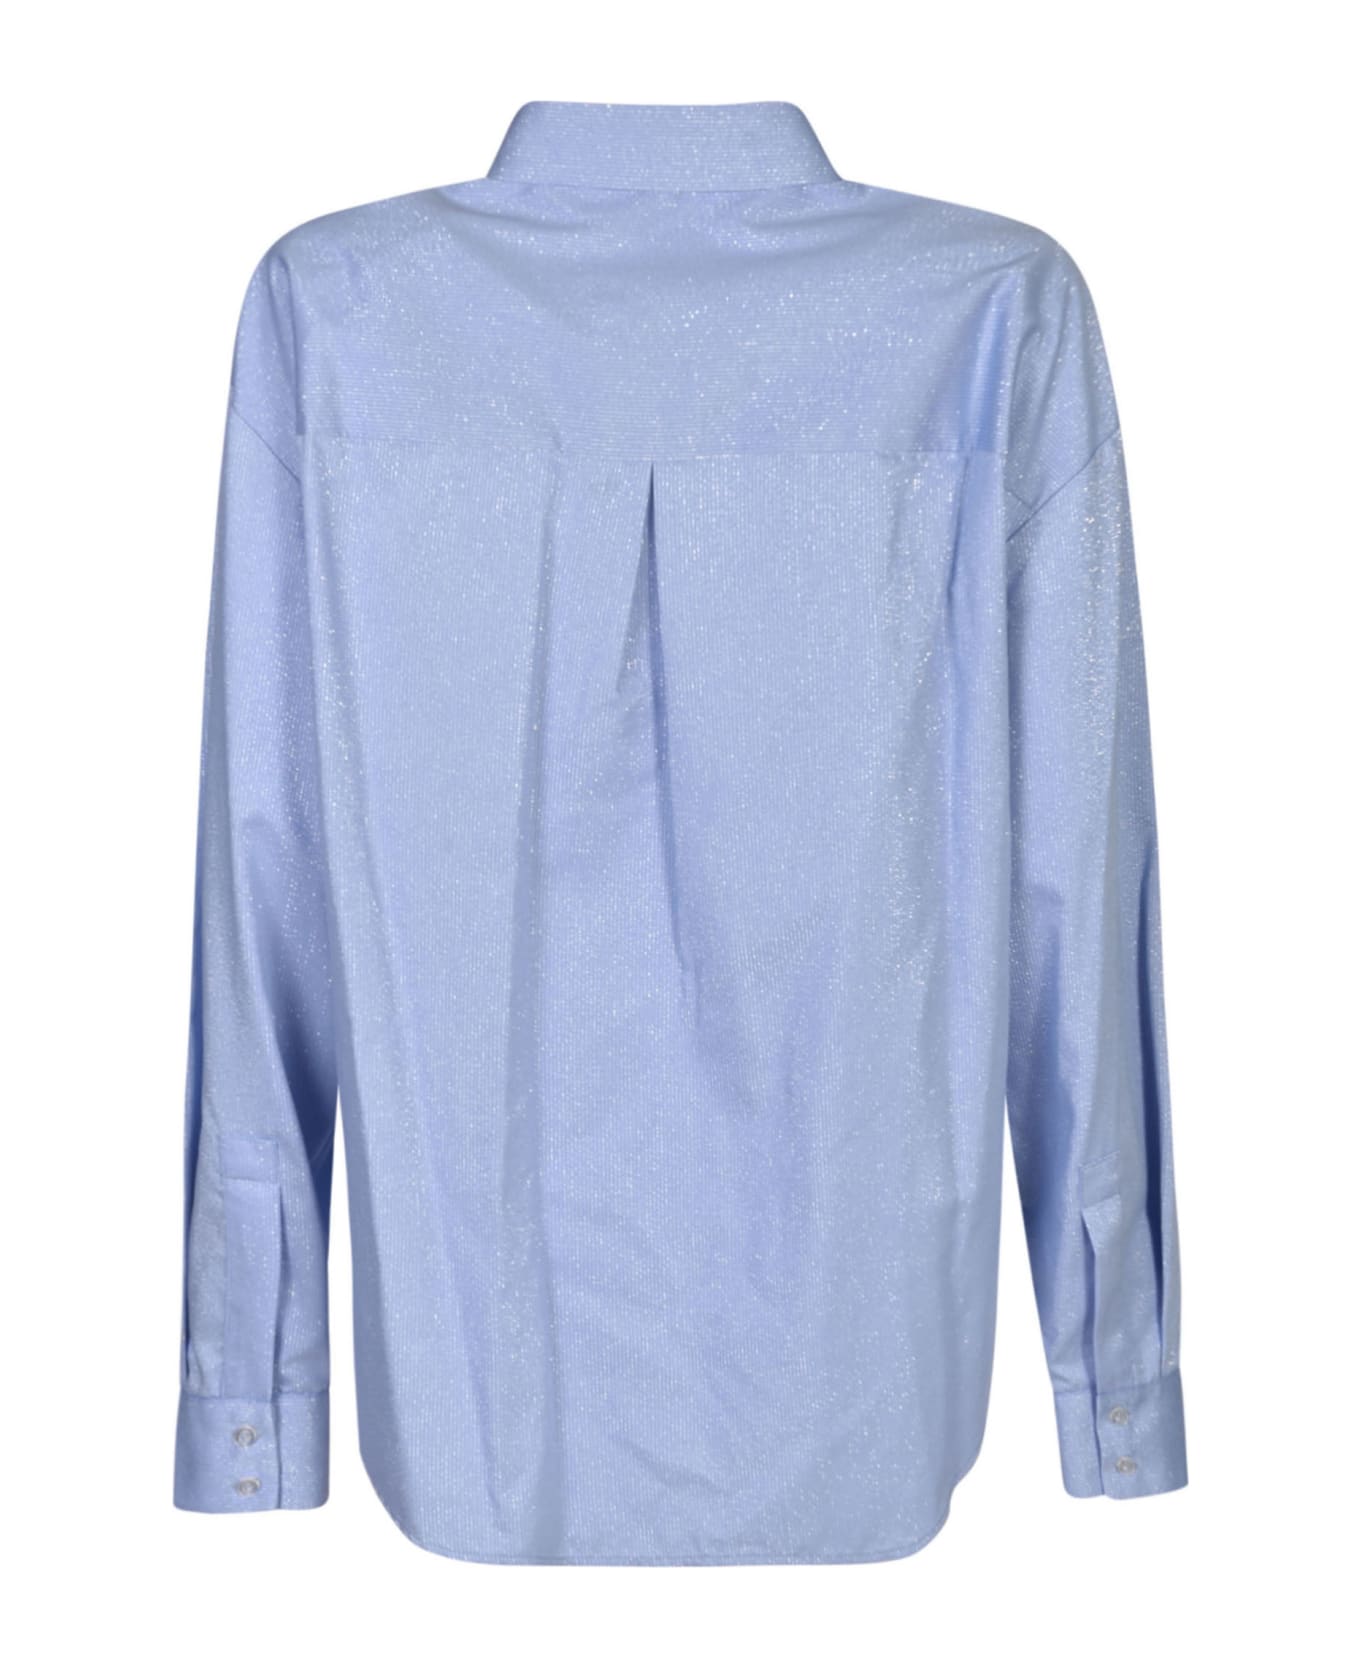 Chiara Ferragni Long-sleeved Glittered Shirt - Blue